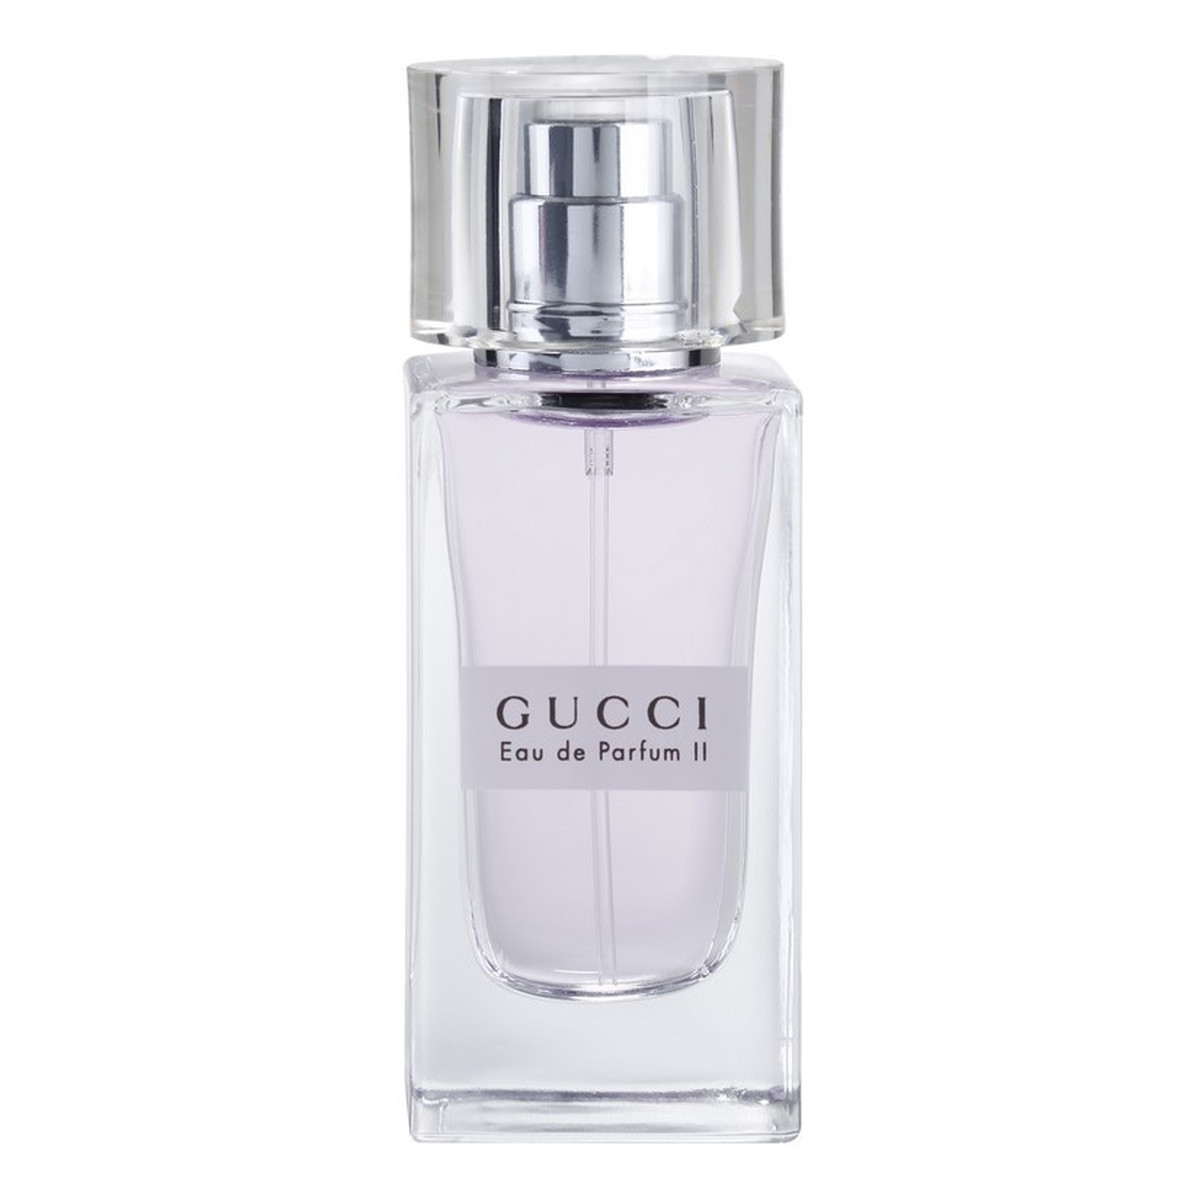 Gucci Eau de Parfum II Woda perfumowana dla kobiet 30ml